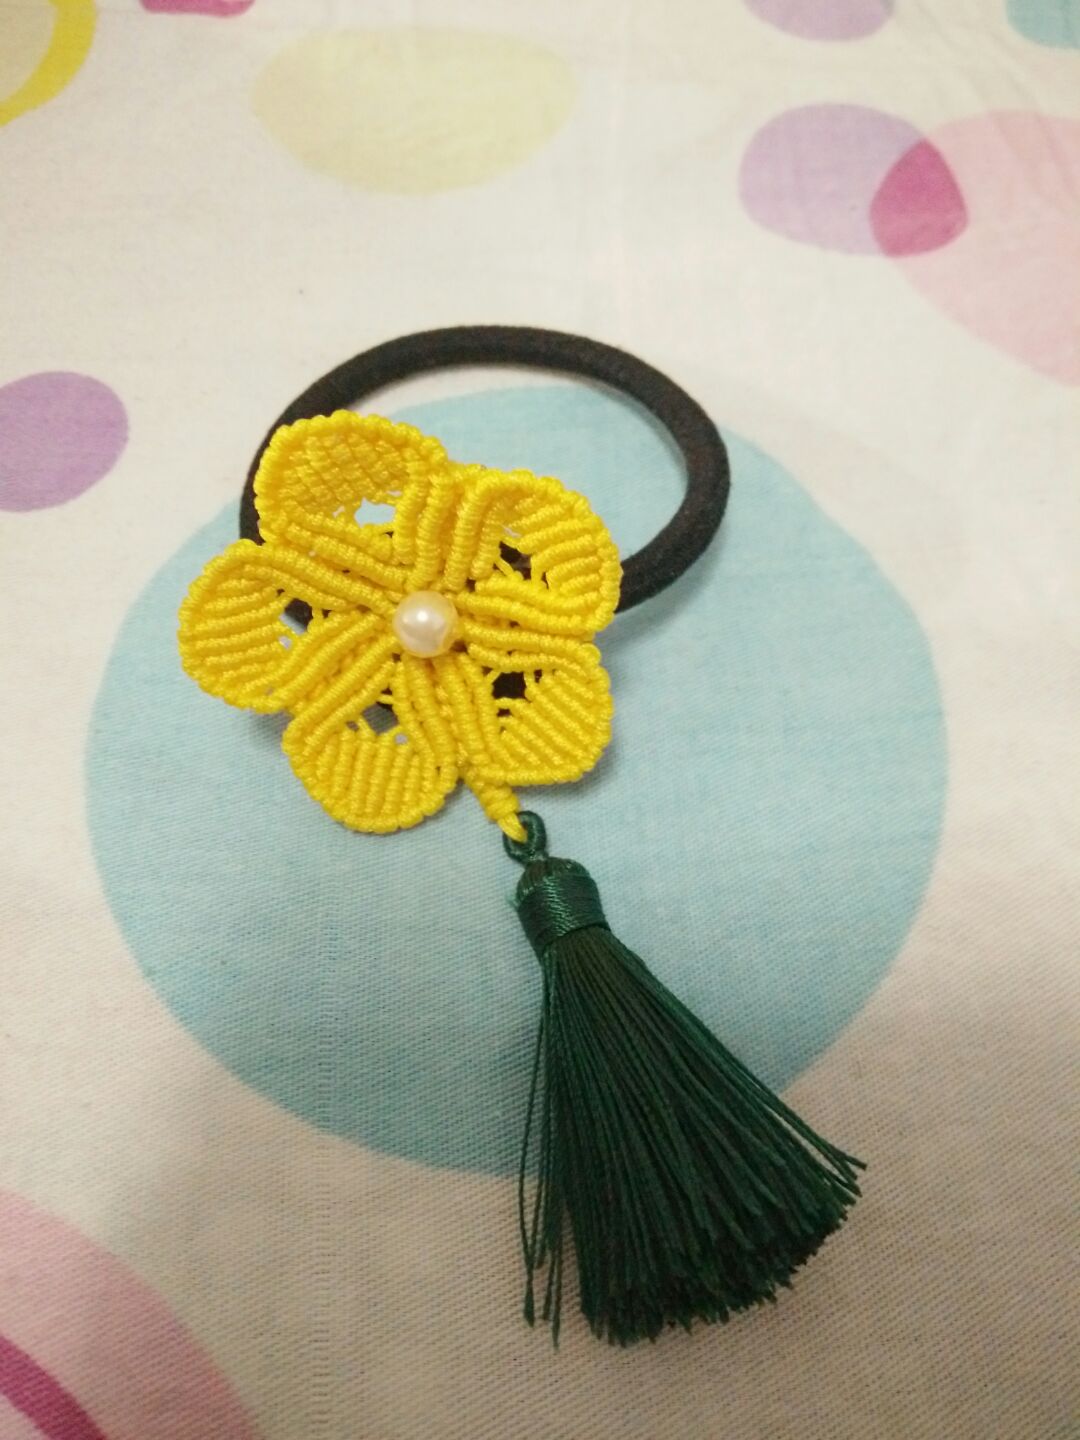 用一朵小黄花做了头绳